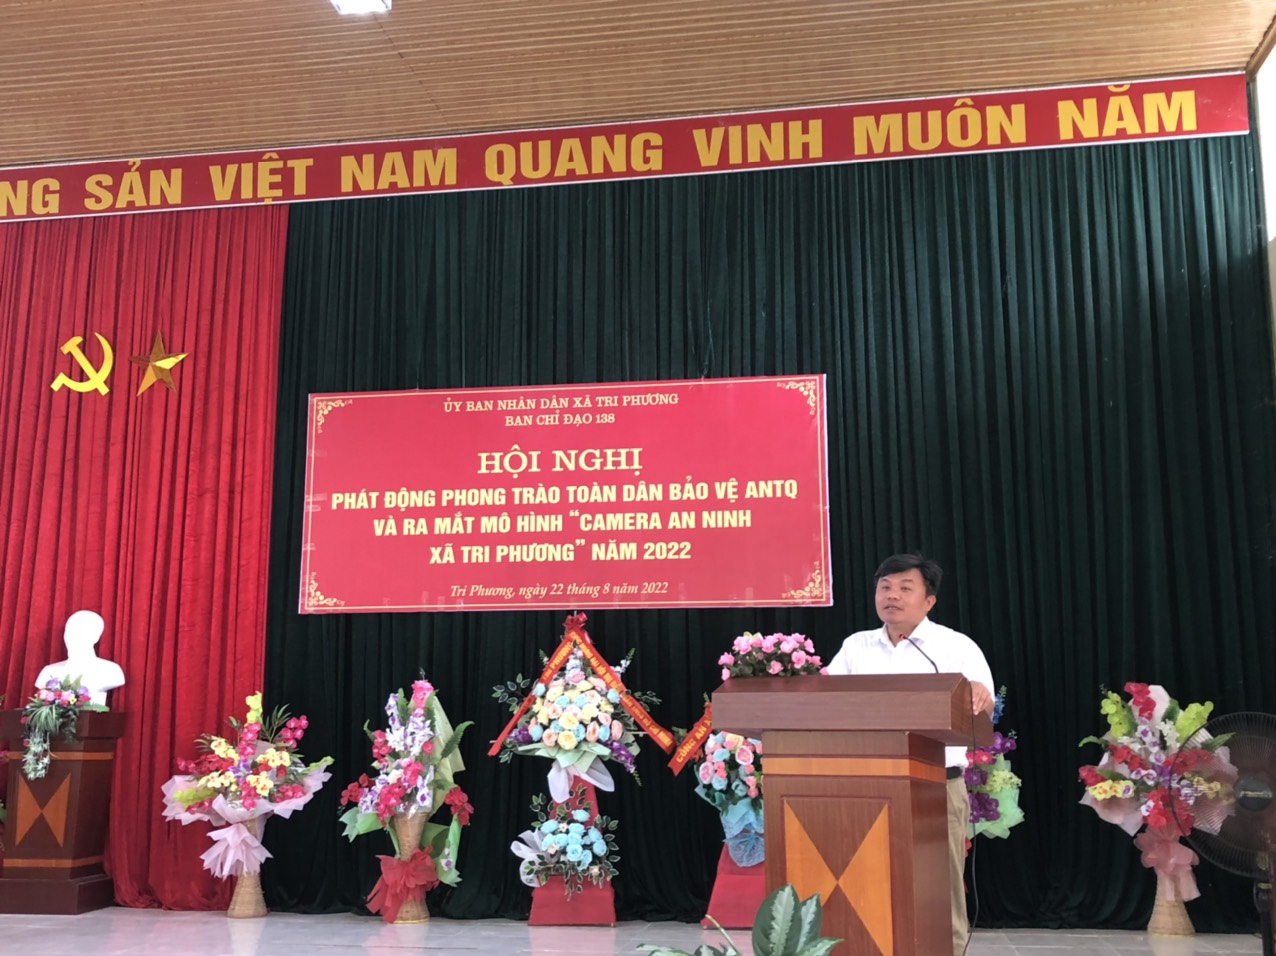 Đồng chí Hoàng Anh Dũng - Phó Bí thư thường trực huyện Tràng Định phát biểu tại hội nghị